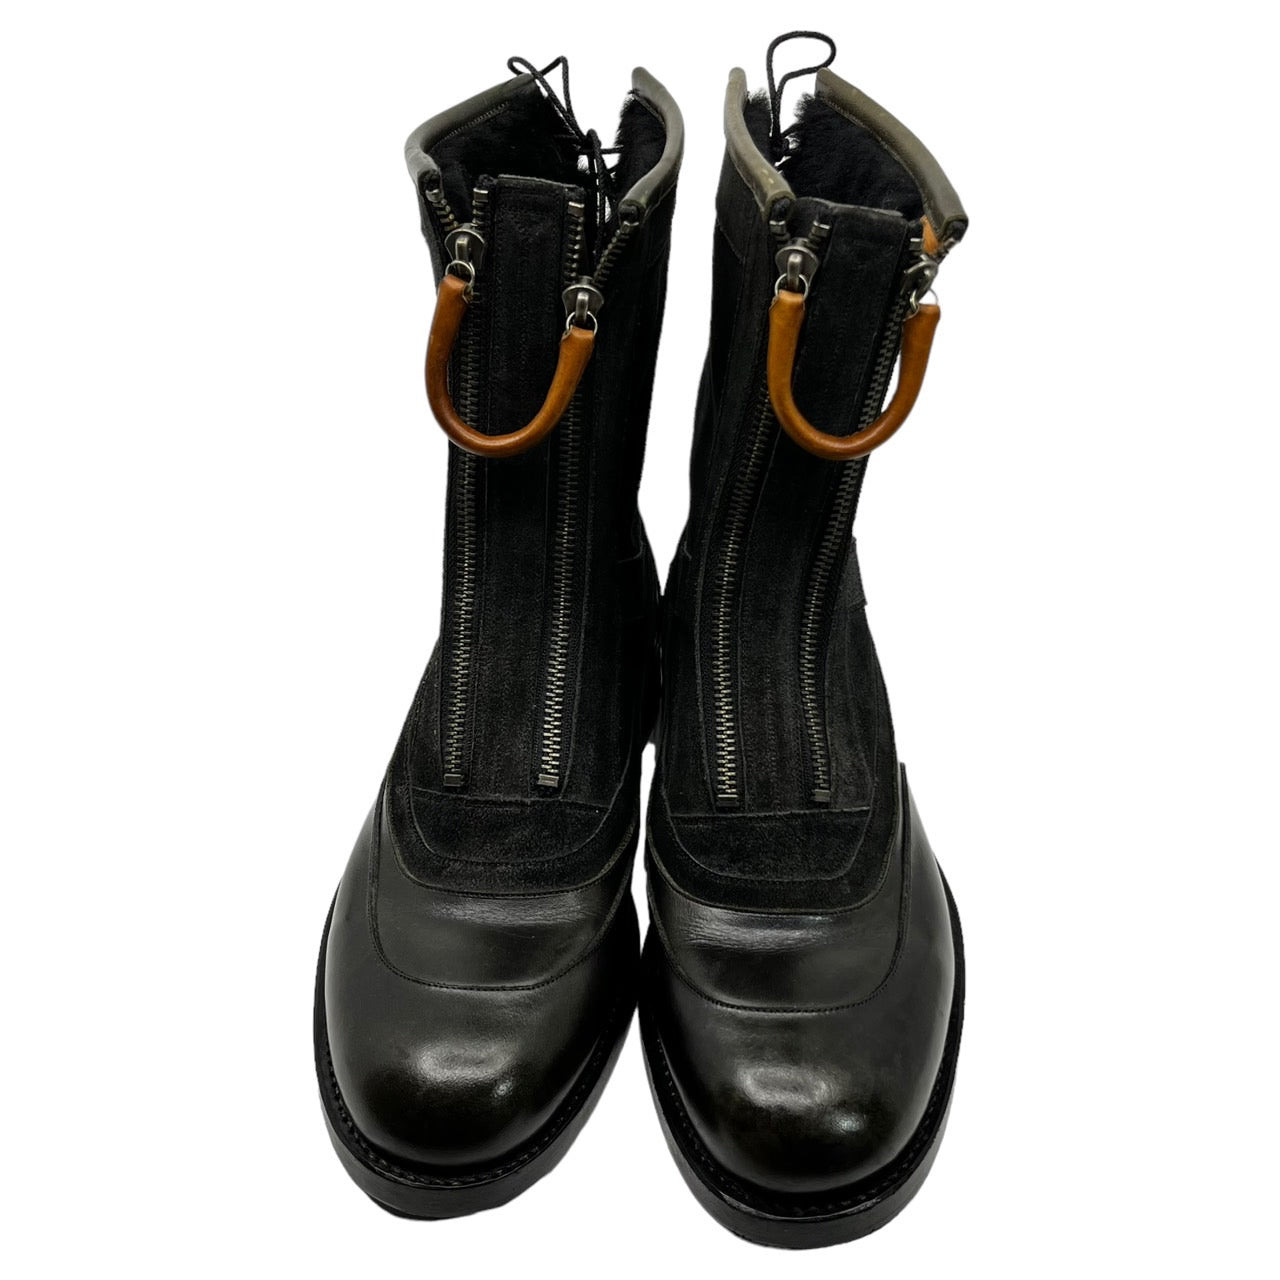 foot the coacher(フットザコーチャー) leather handle double zip boots レザーハンドル ダブルジップ ブーツ 本革 SIZE表記無し ブラック×ブラウン 内ボア